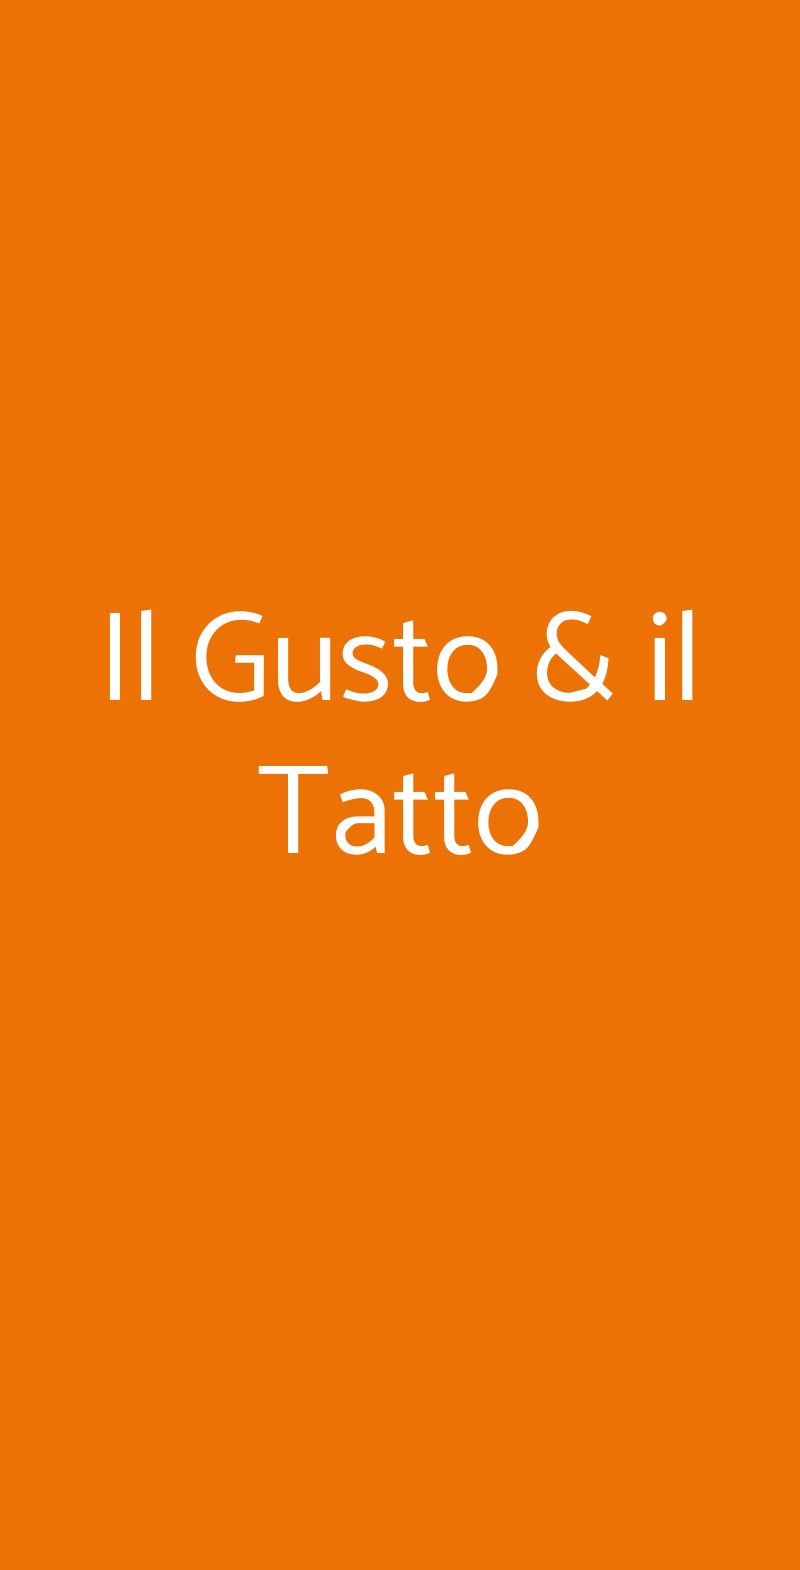 Il Gusto & il Tatto Castelfiorentino menù 1 pagina